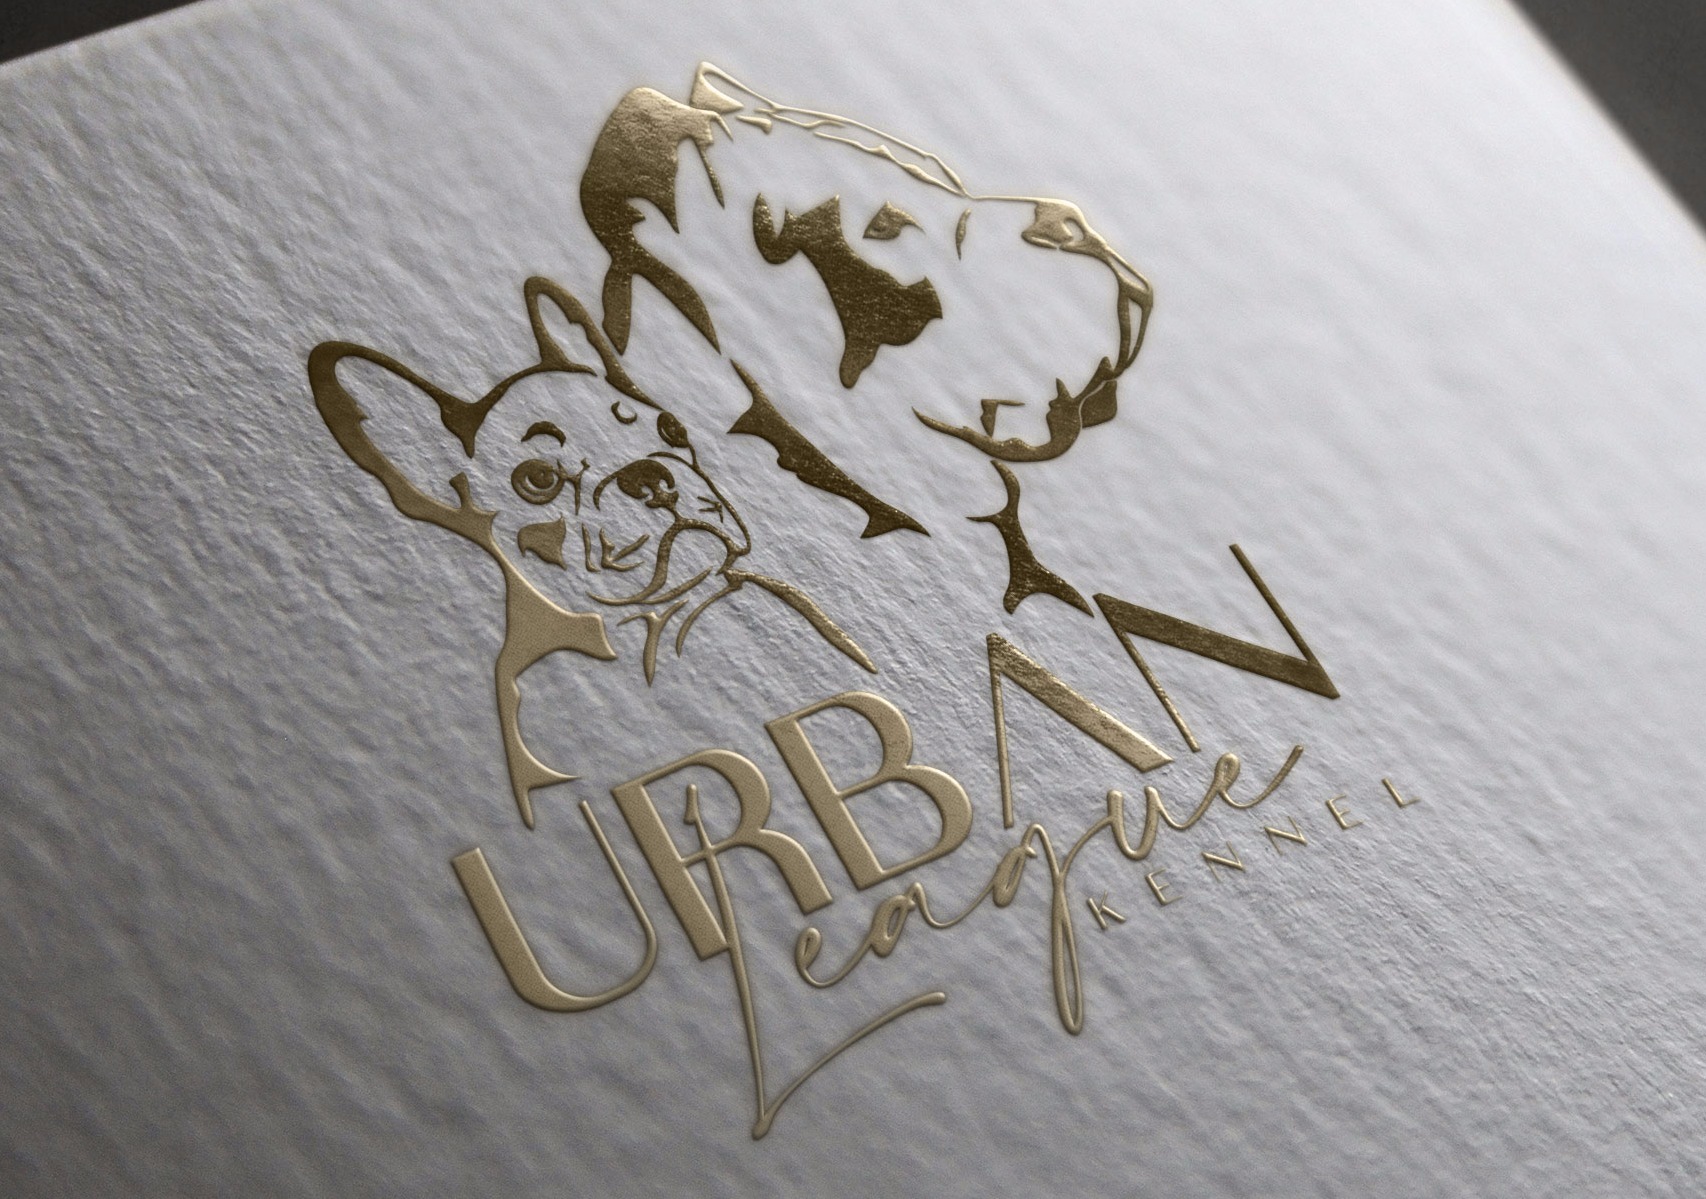 Breeder logo. Cane corso and french bulldog logo